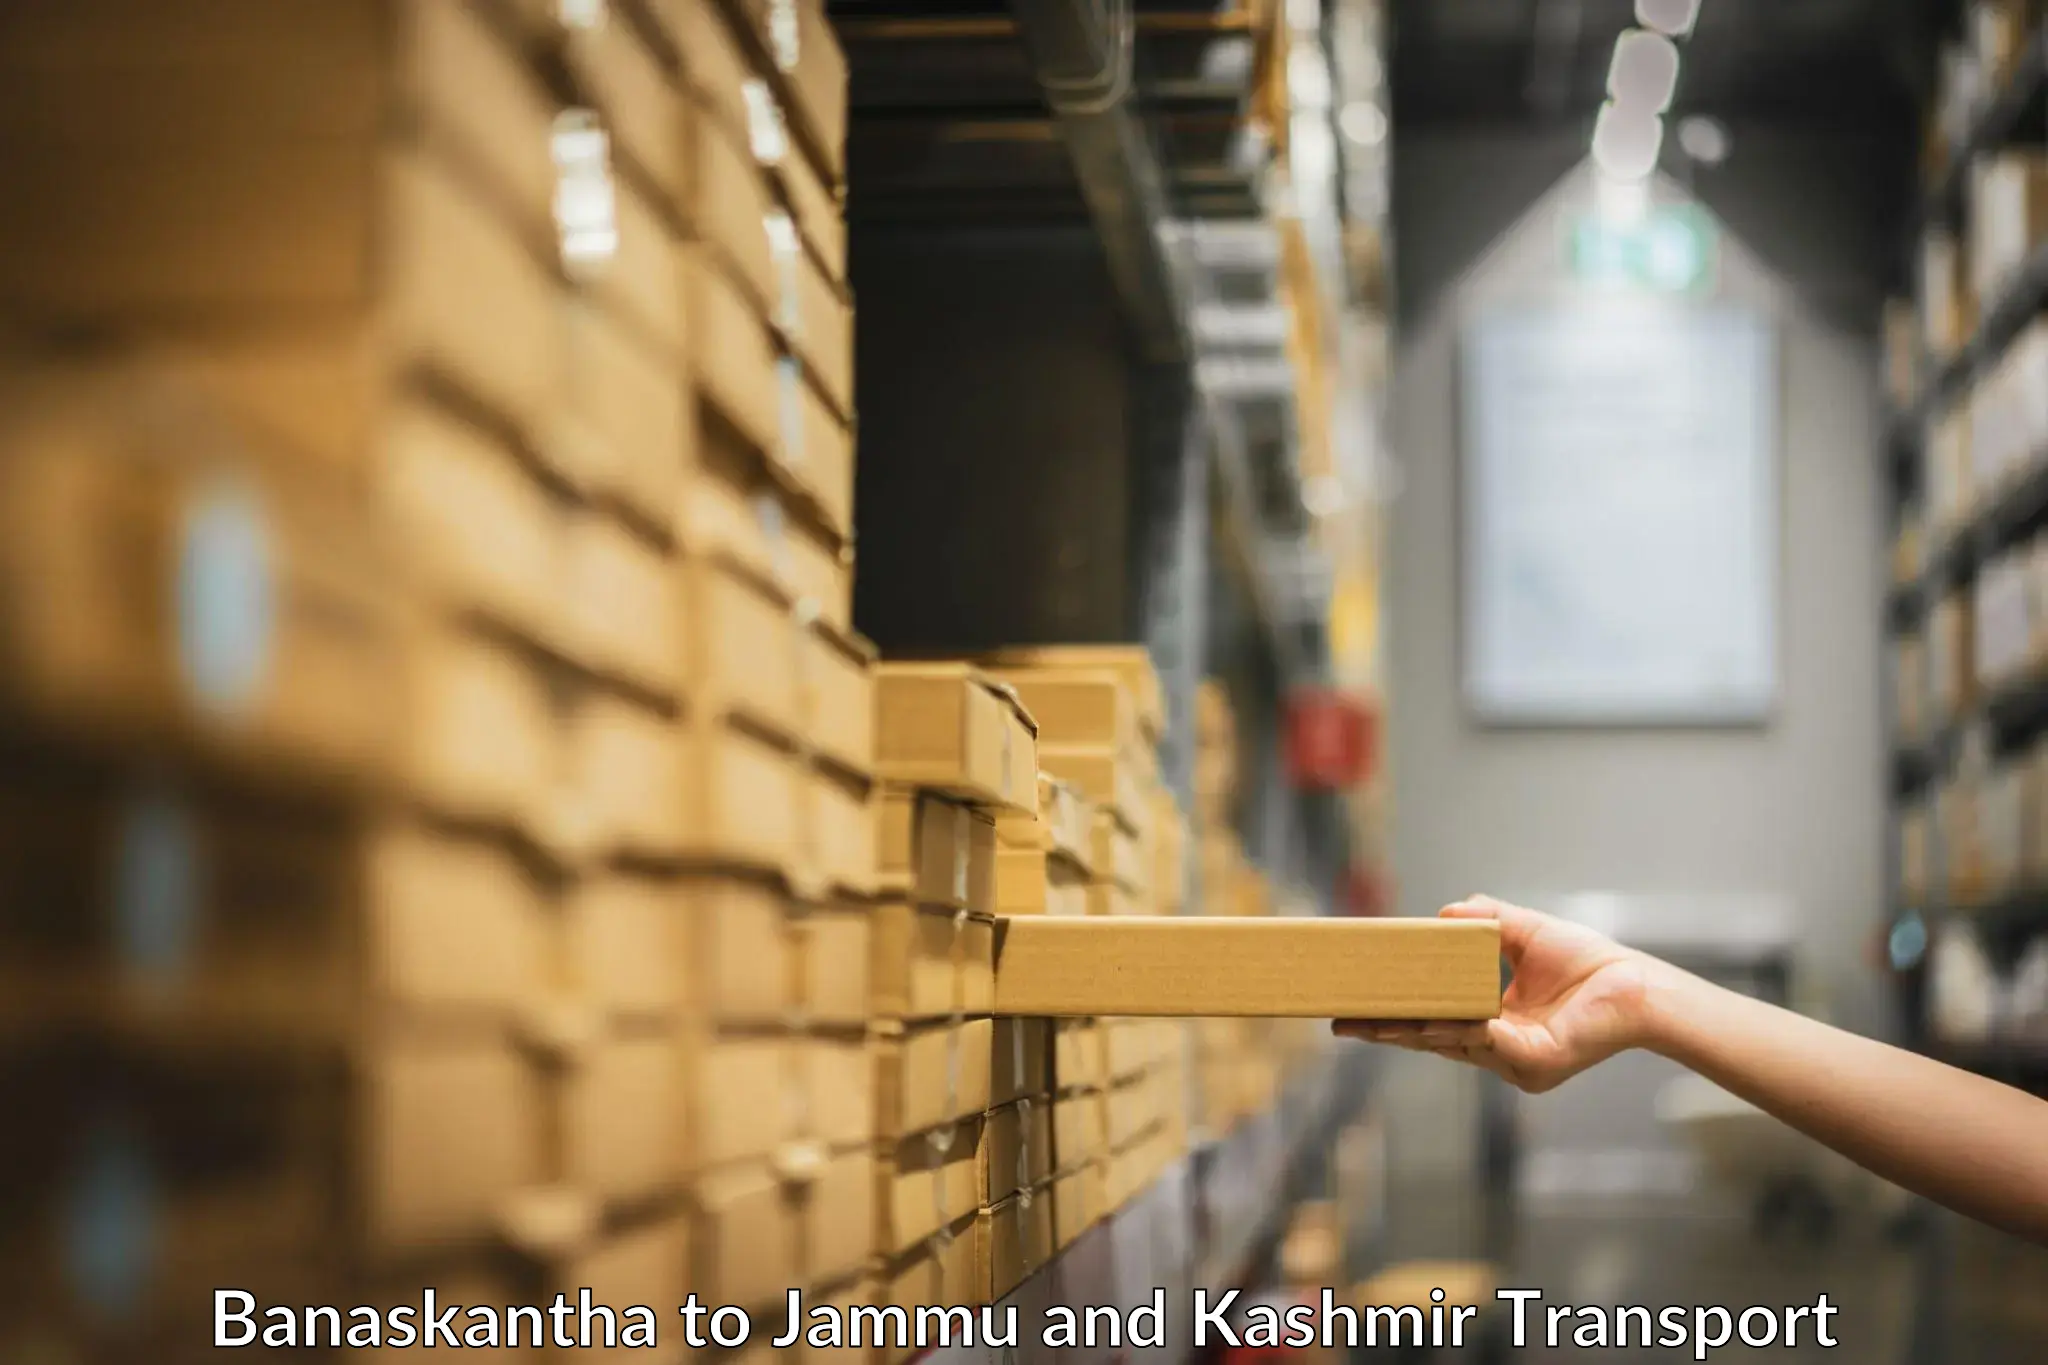 Container transport service Banaskantha to Kargil